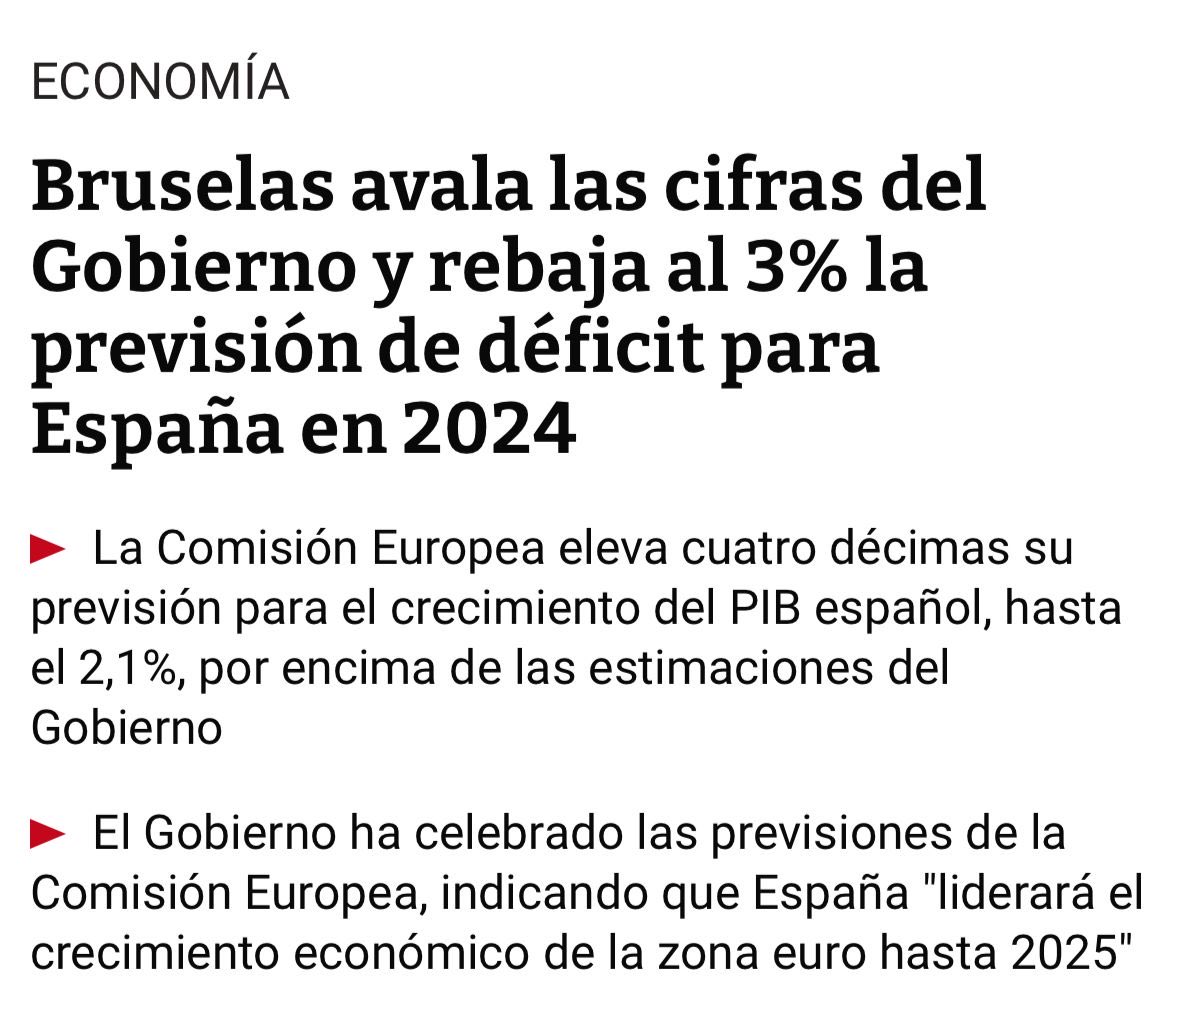 ‼️🔝La @ComisionEuropea revisa al alza el crecimiento de la economía 🇪🇸. ✅ España seguirá liderando 2 años consecutivos, hasta 2025 el crecimiento económico entre los principales países de 🇪🇺. ✅Mejora la previsión del déficit, confirmando que se situará en el 3% este año.